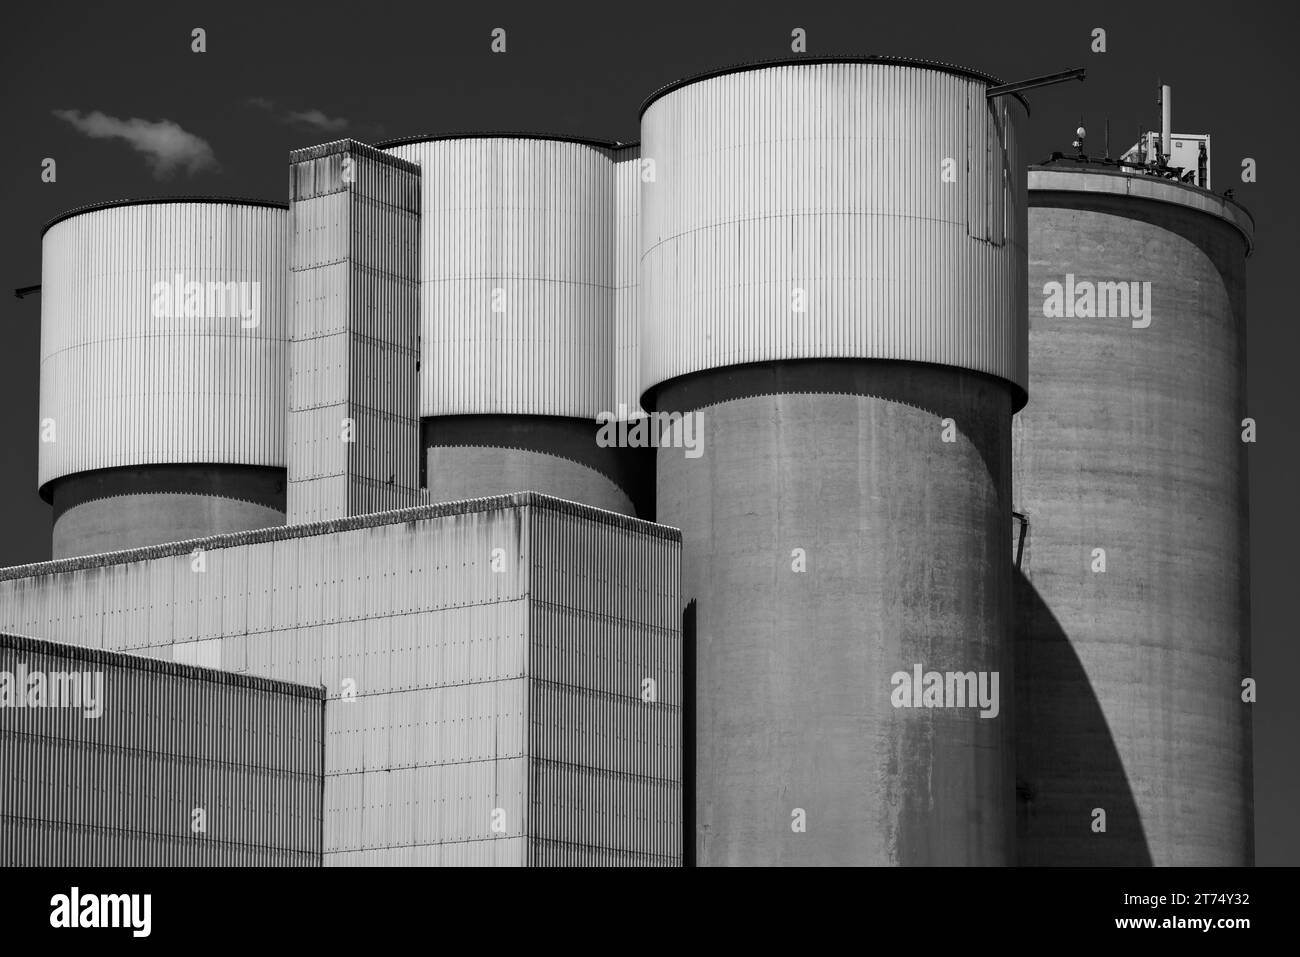 Cimenterie avec silos et tours de traitement Banque D'Images